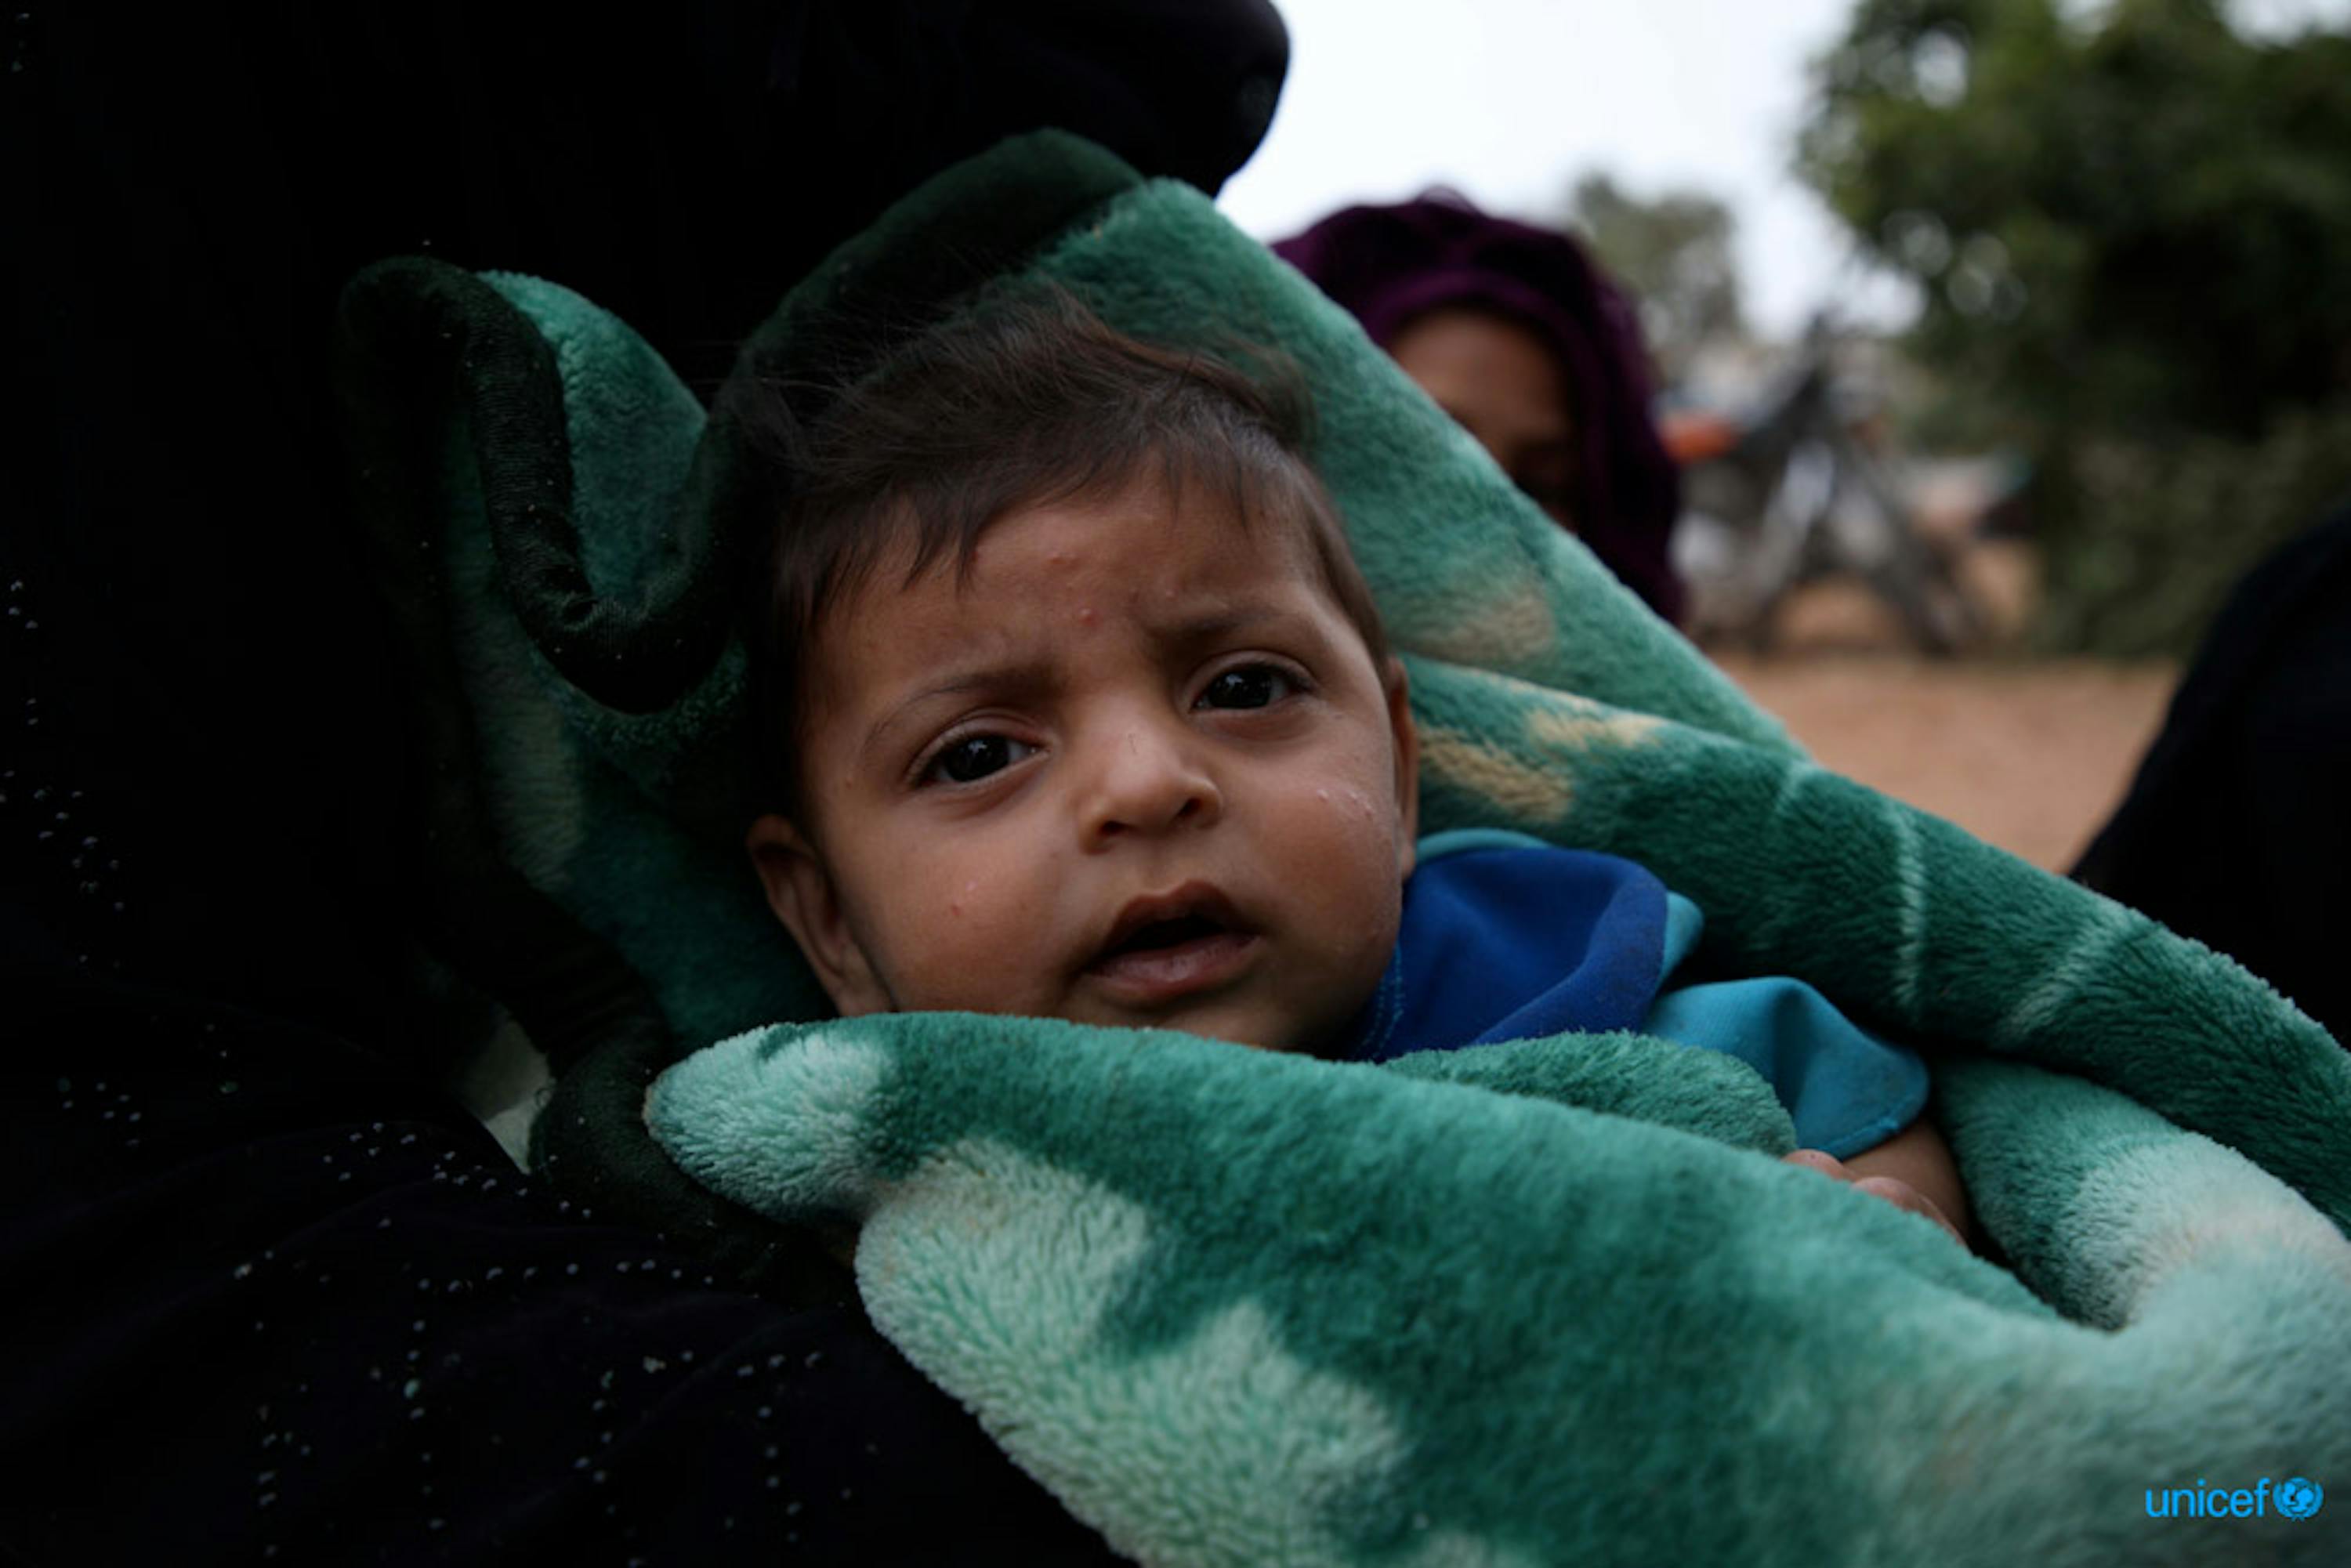 © UNICEF/UN0318504/Watad